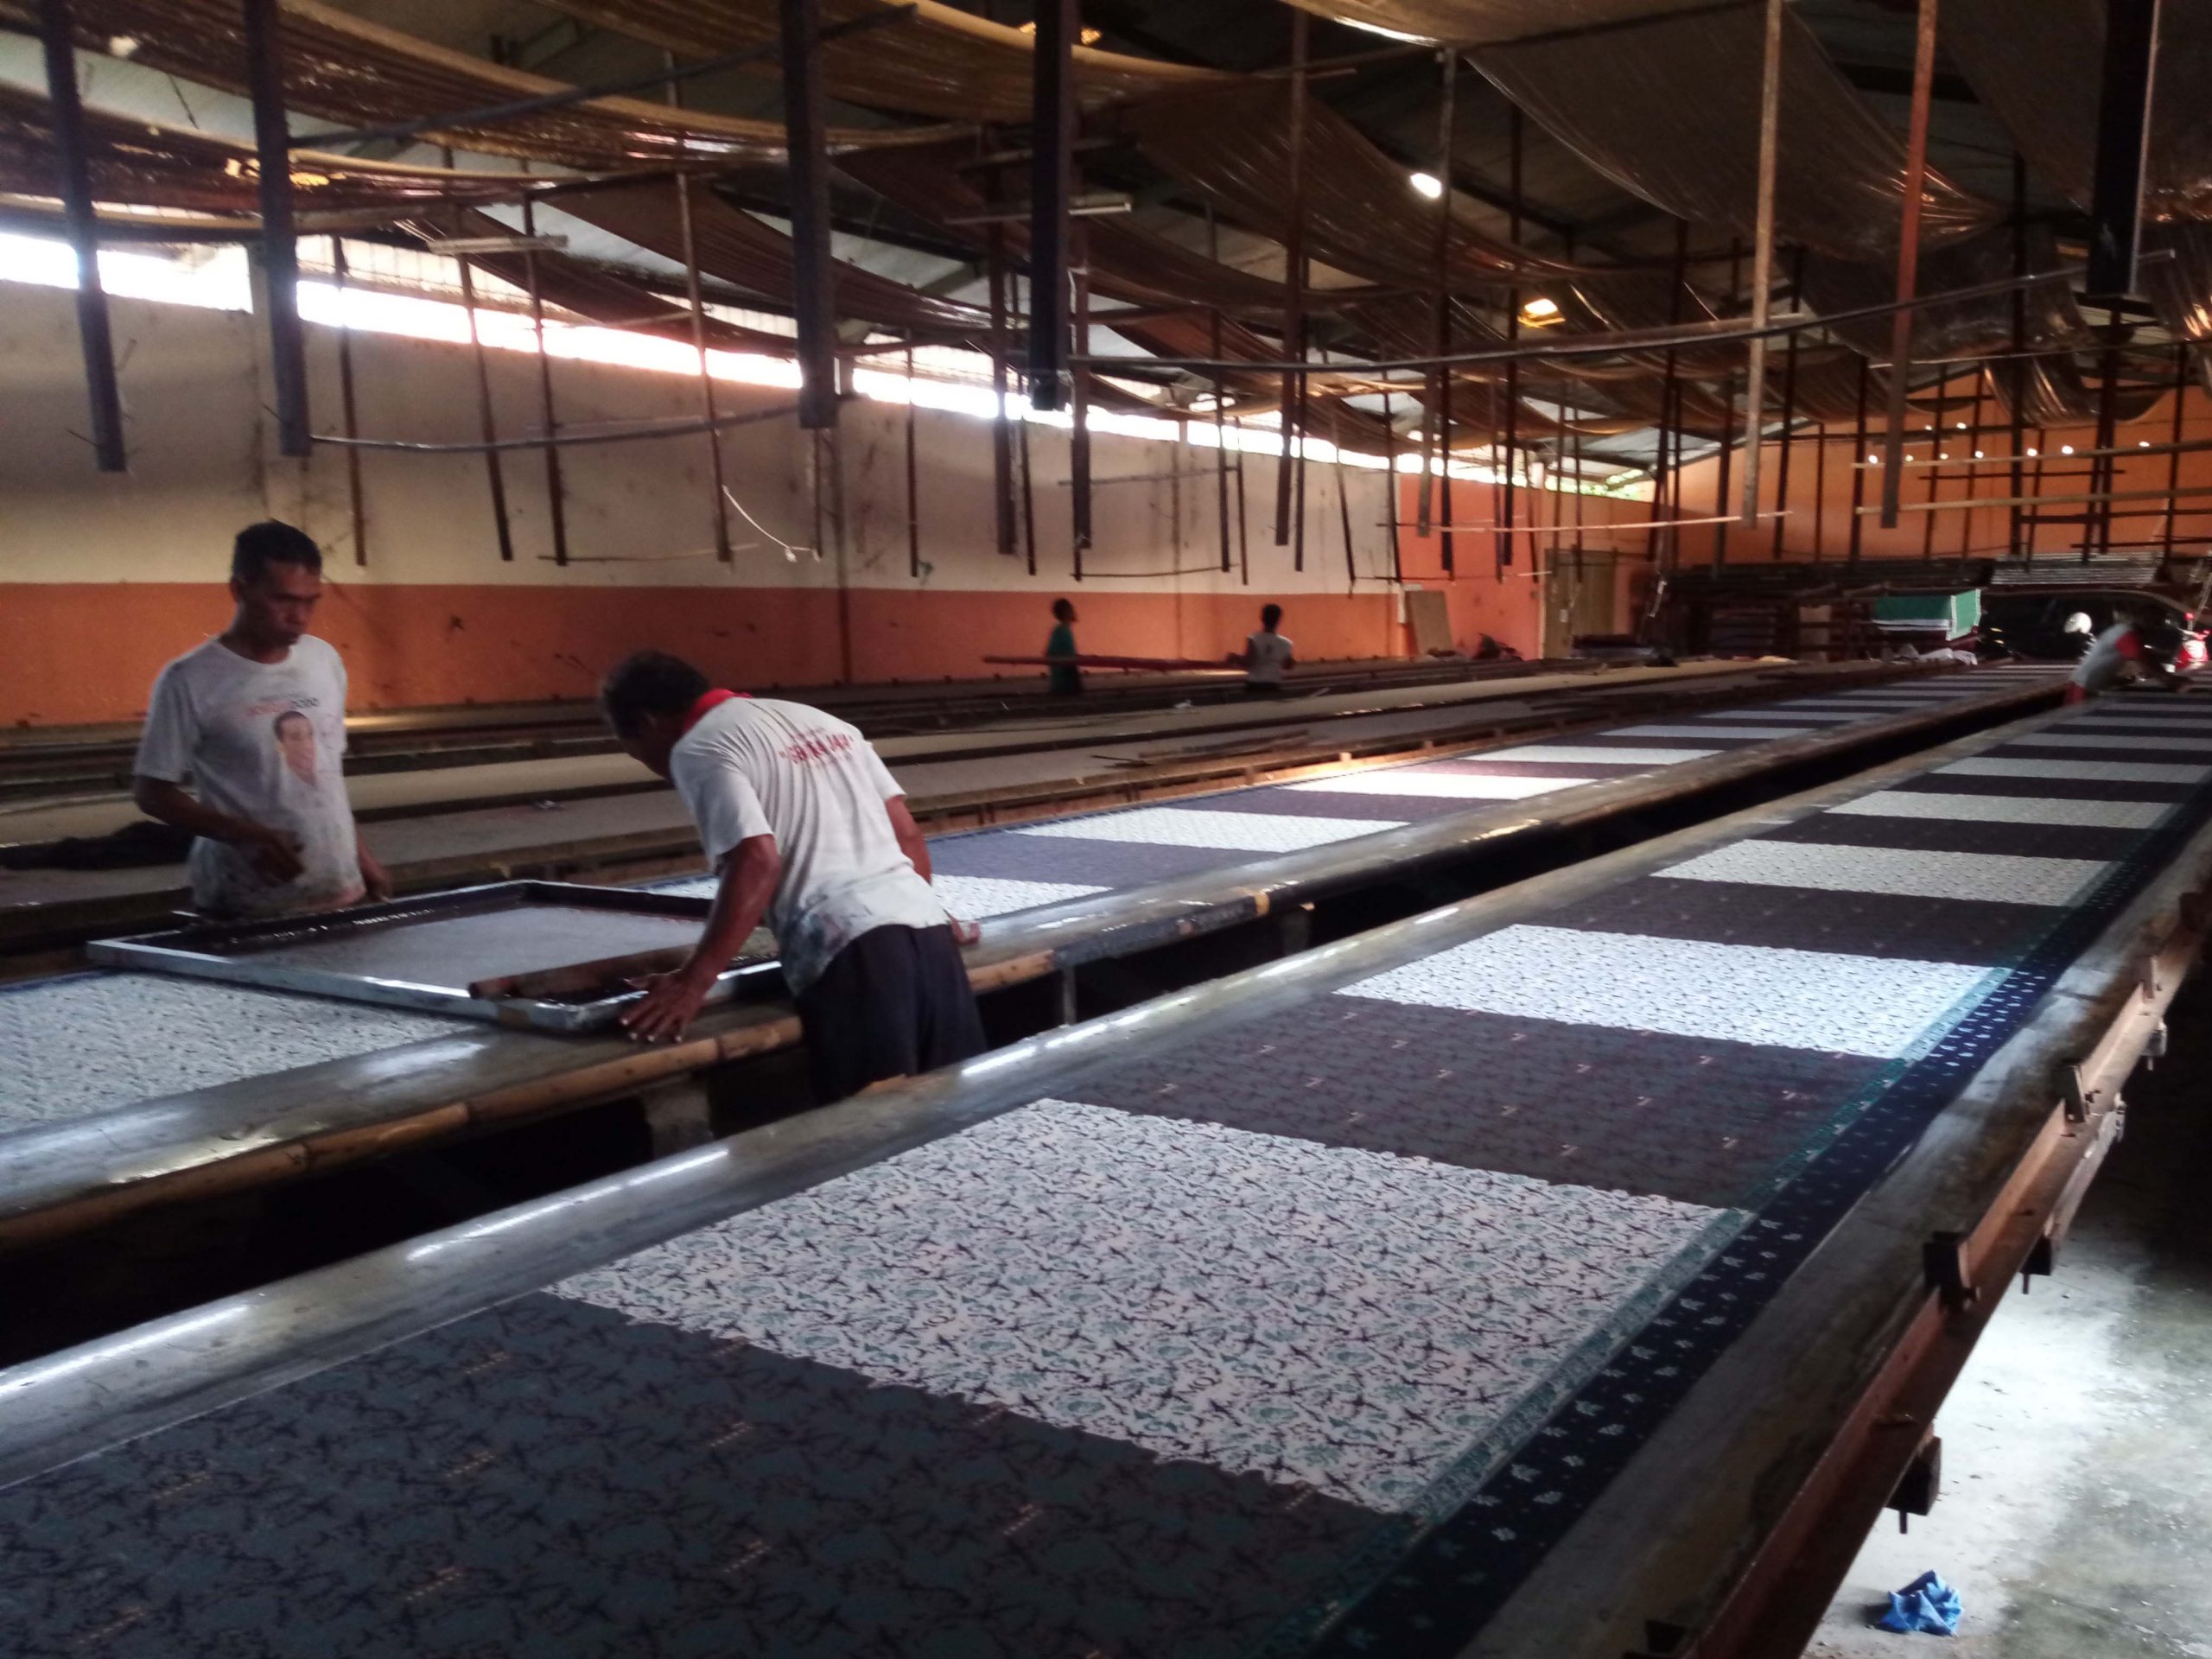 batik printing